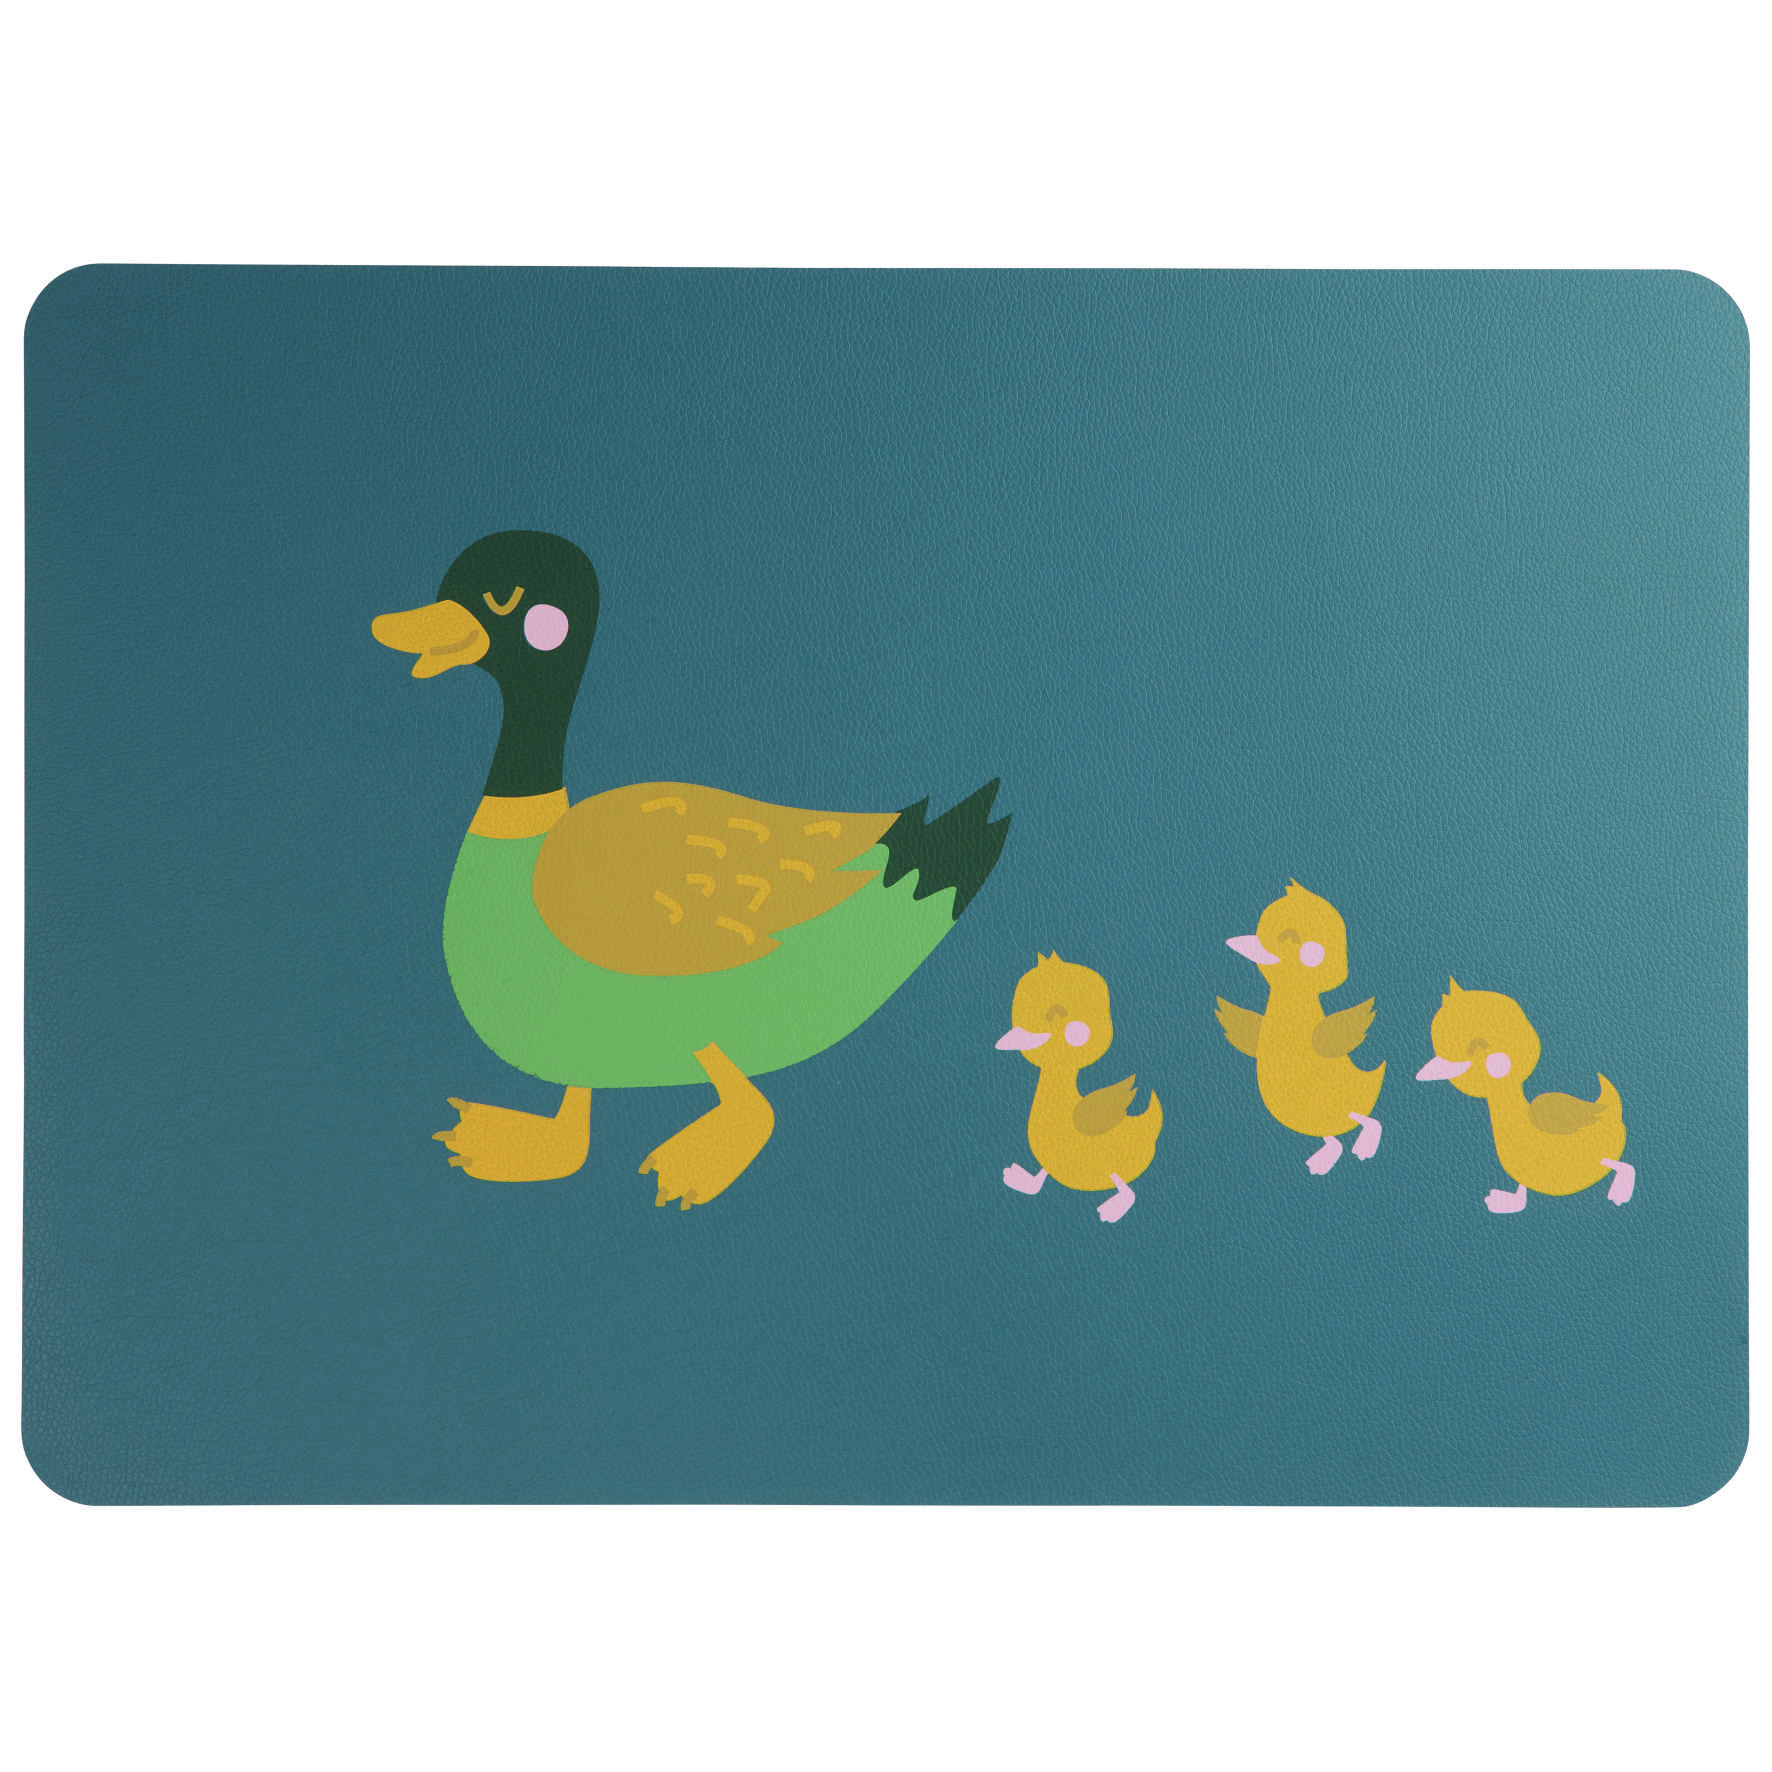 Tischset, Kids, 46x33cm Duck Emil wiht Ducklings